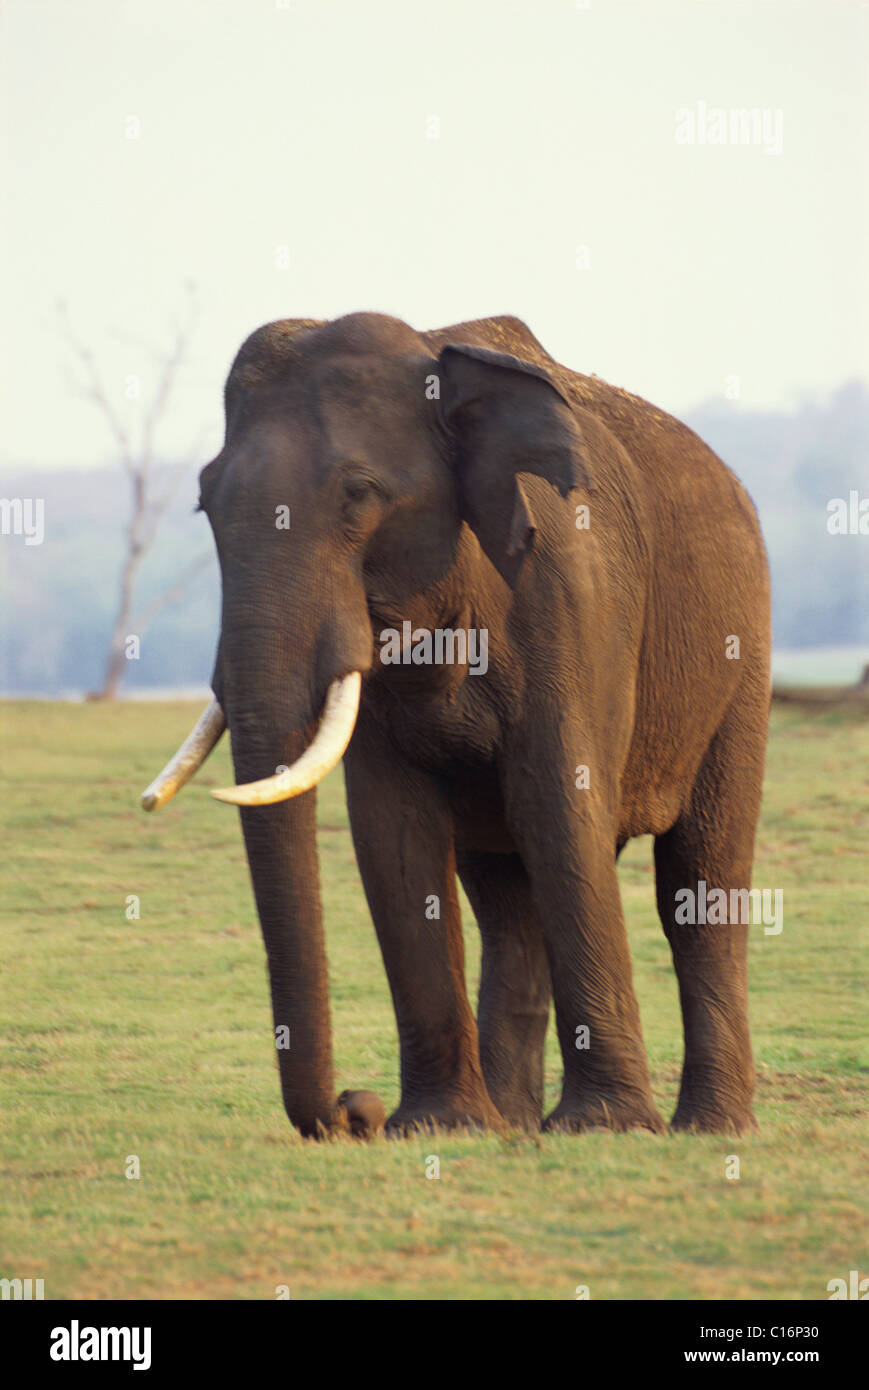 L'éléphant indien (Elephas maximus indicus) marche dans une forêt, Bandipur National Park, Chamarajanagar, Karnataka, Inde Banque D'Images